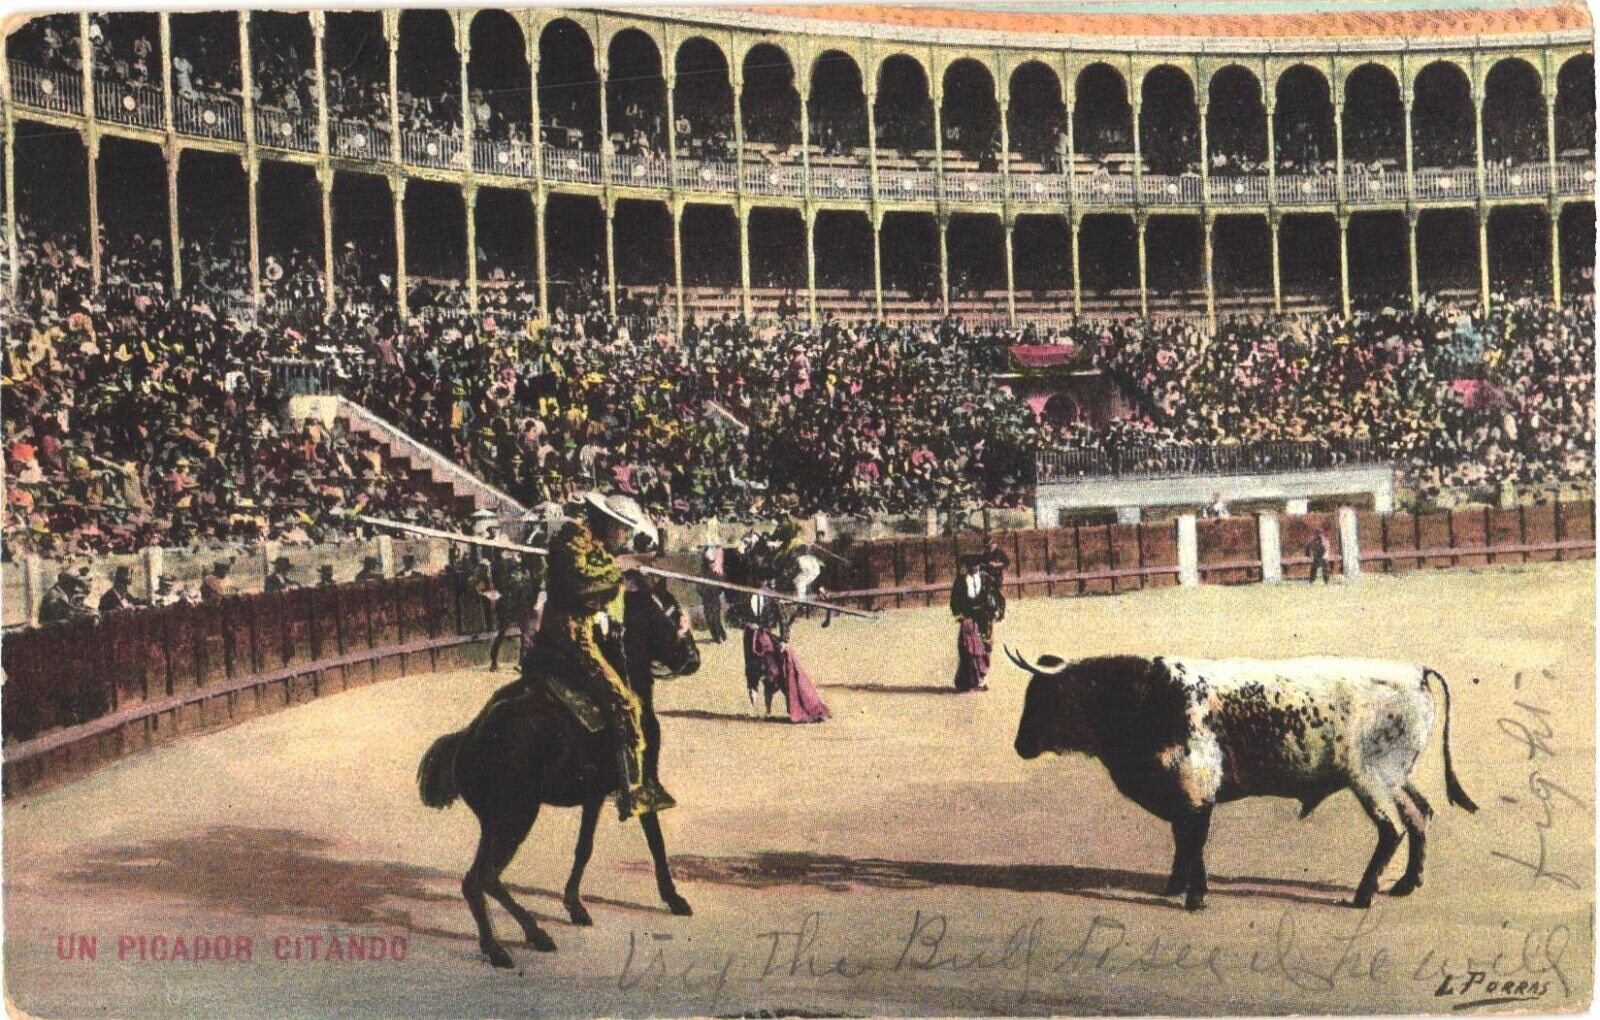 Un Picador Citando Bullfighter on A Horse Bullfight Mexico Postcard